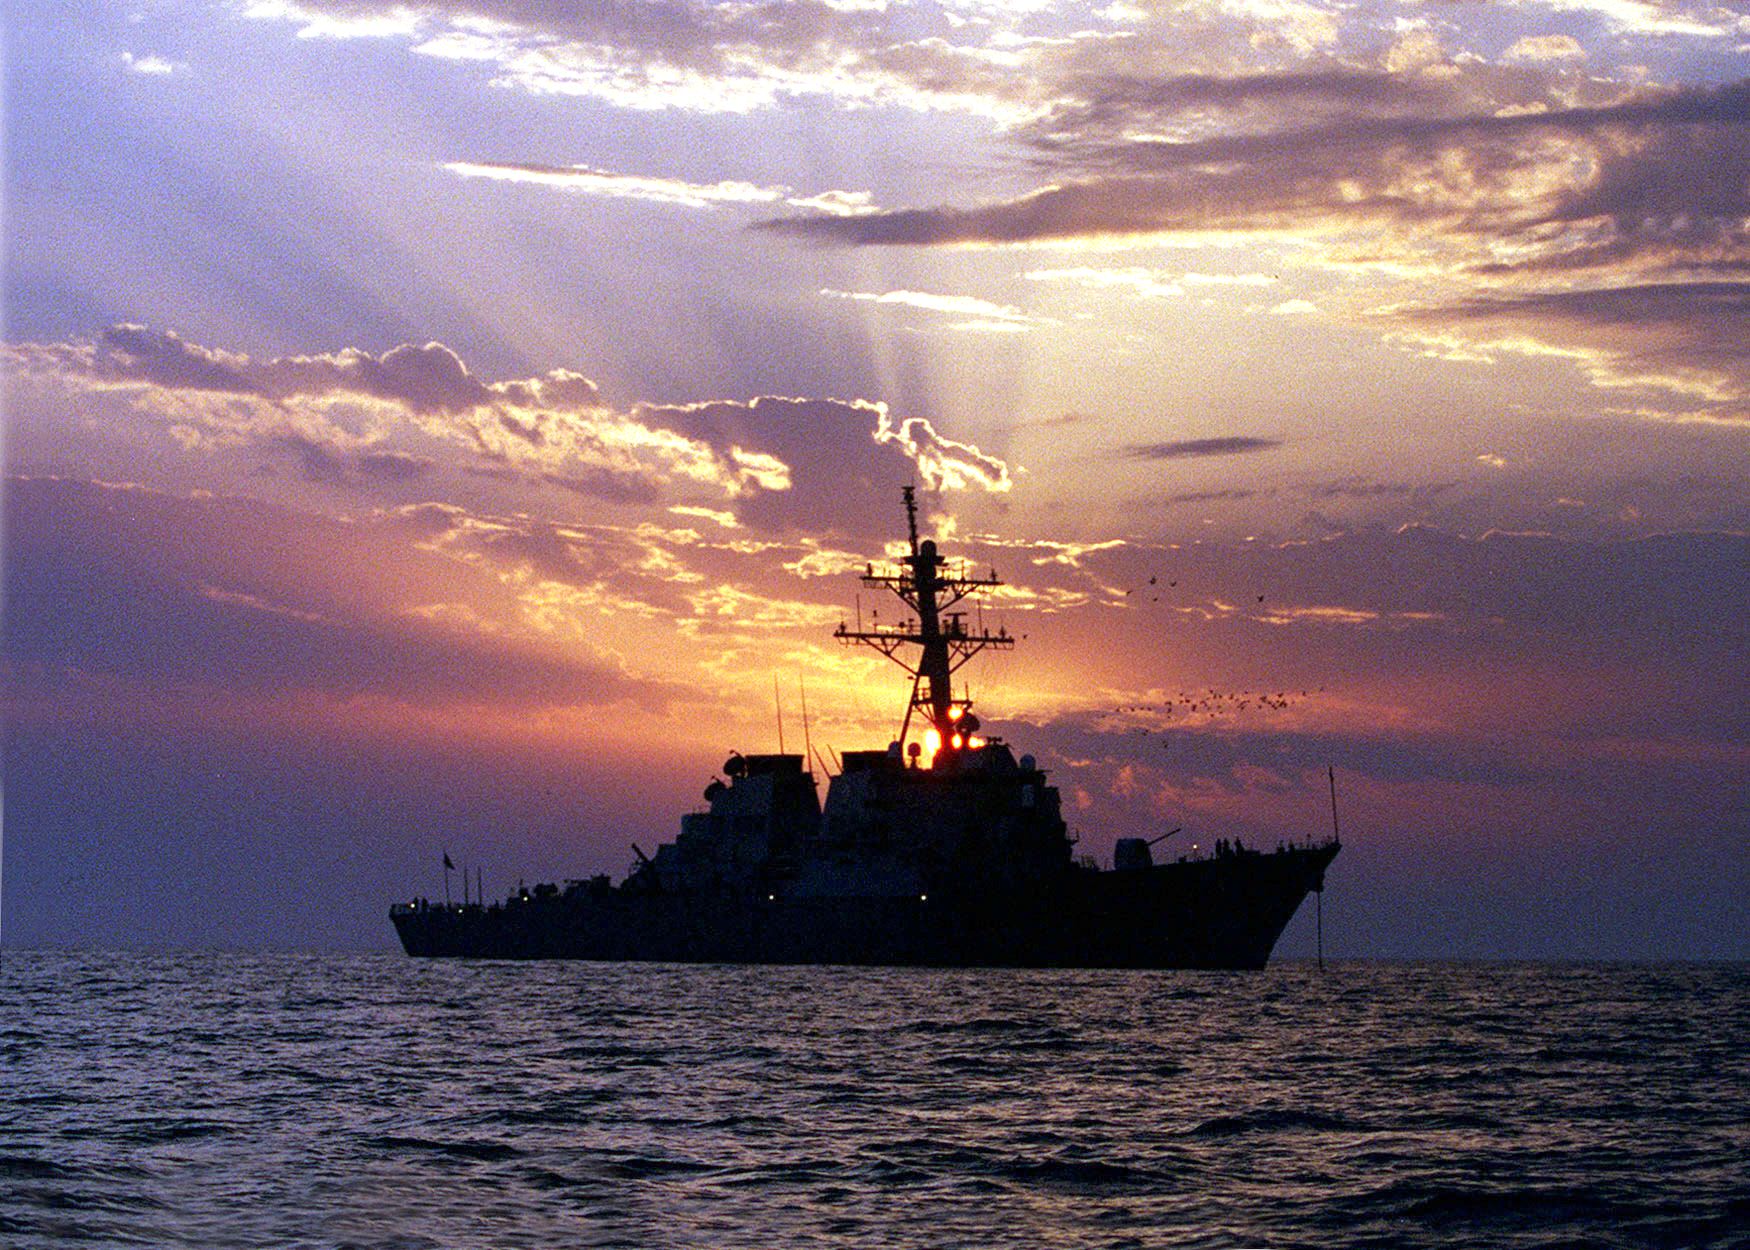 مسؤول عسكري أمريكي: مدمرة في البحر الأحمر استجابت لنداء استغاثة من سفينة تعرضت لهجوم